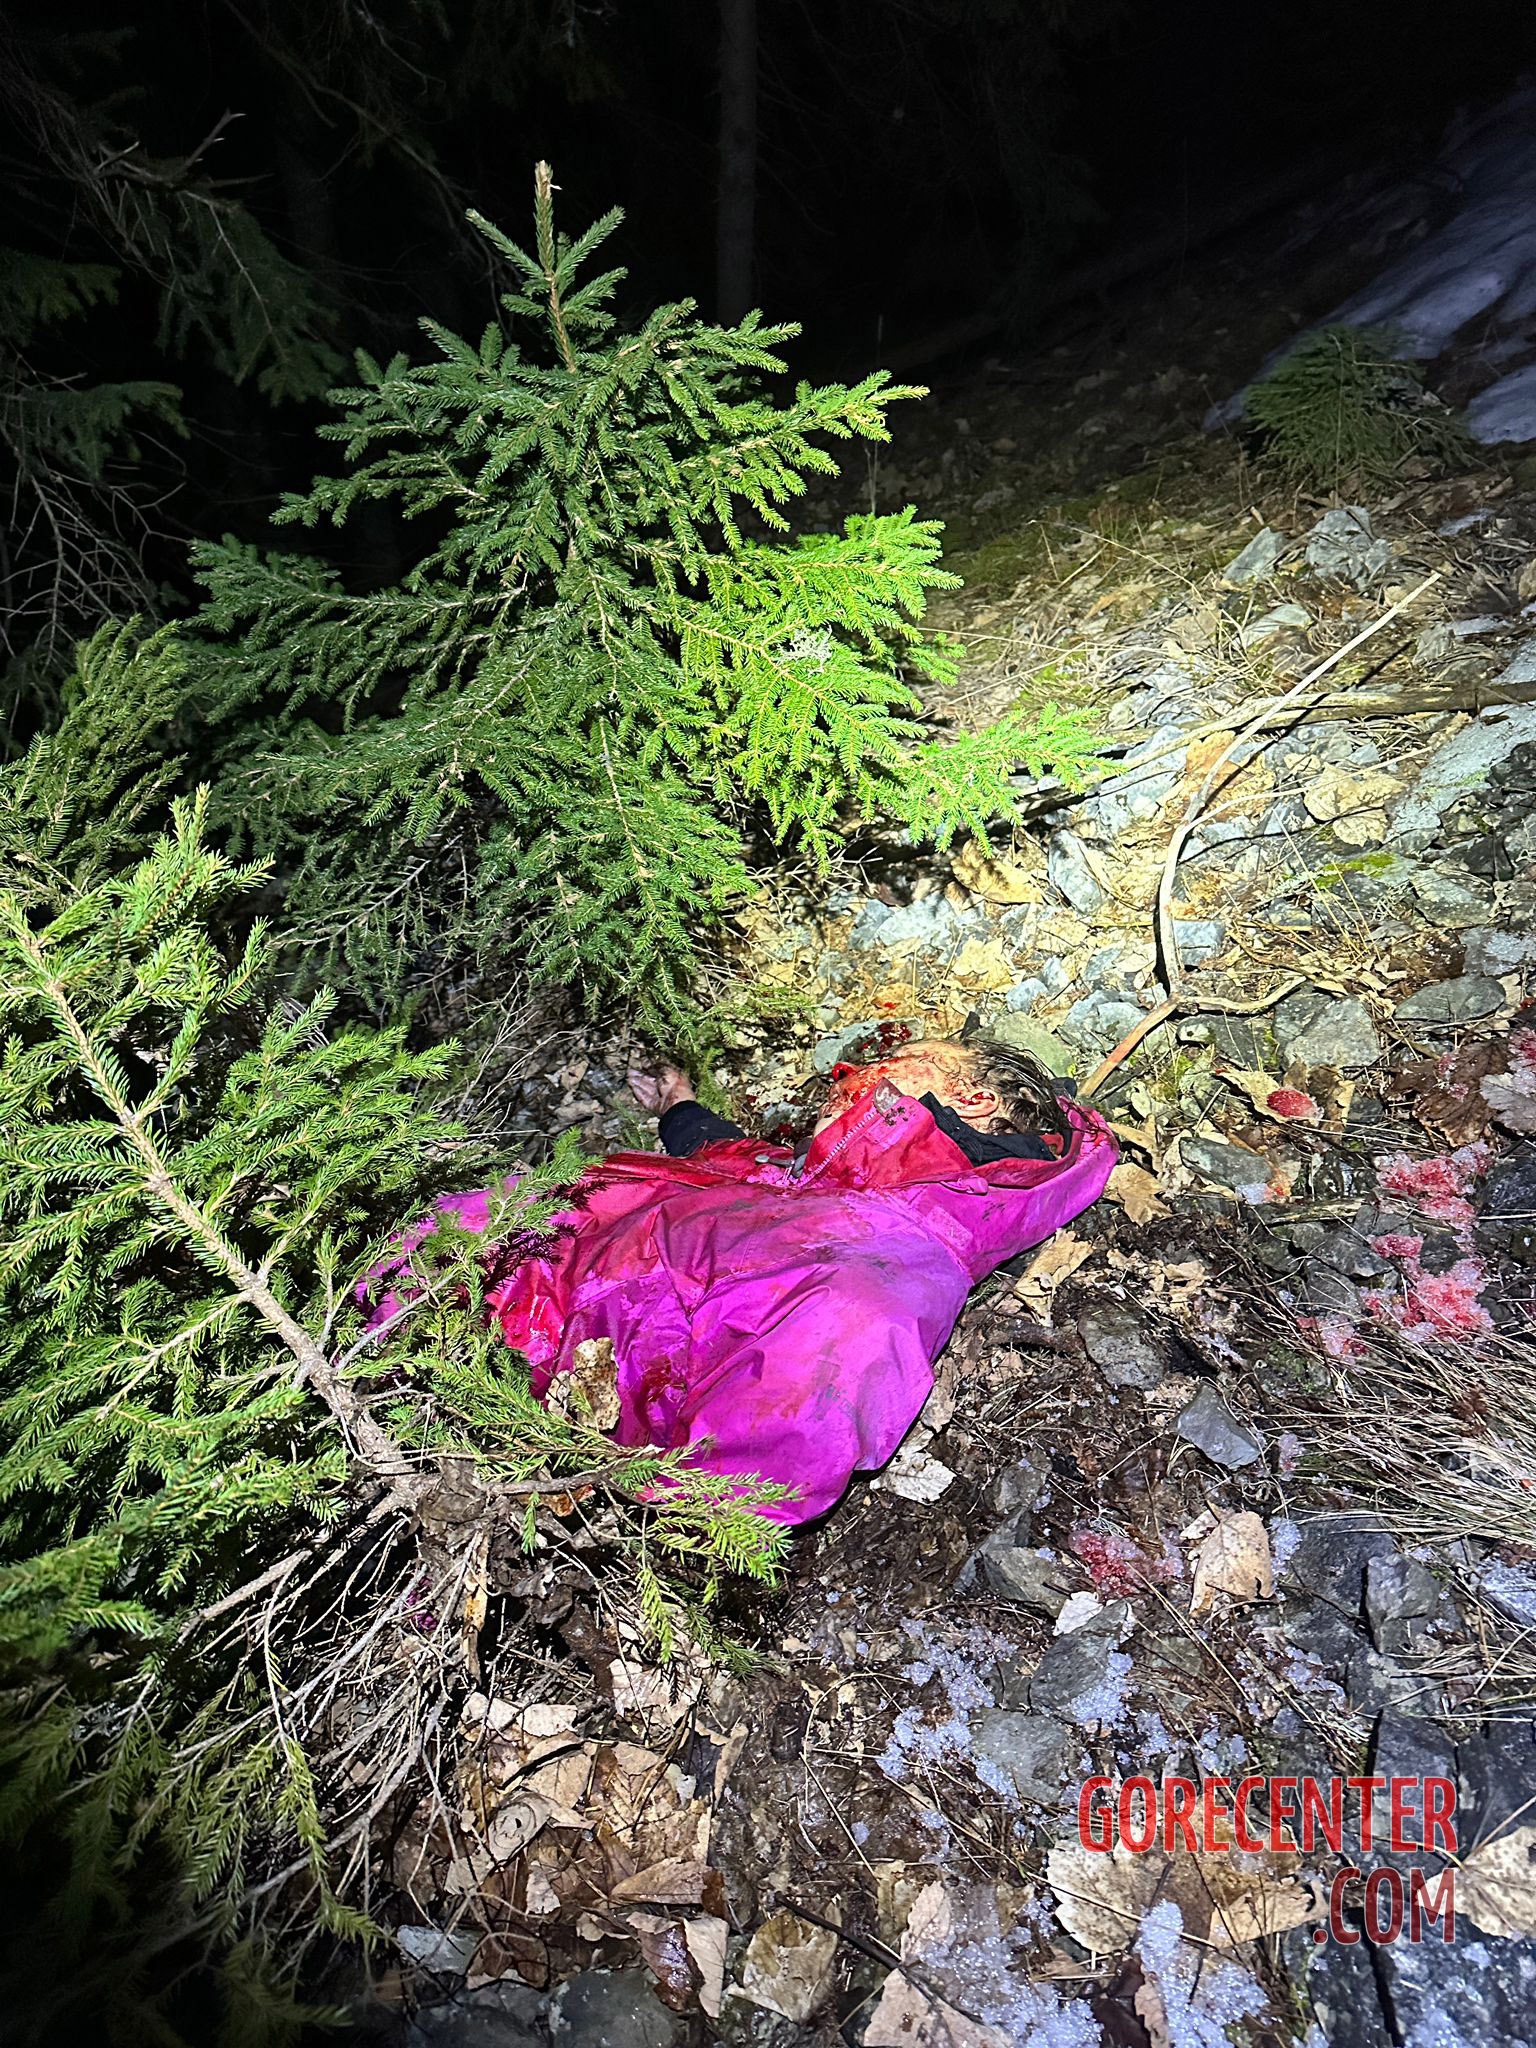 Woman-dies-in-bear-attack-in-Slovakia-1.jpg